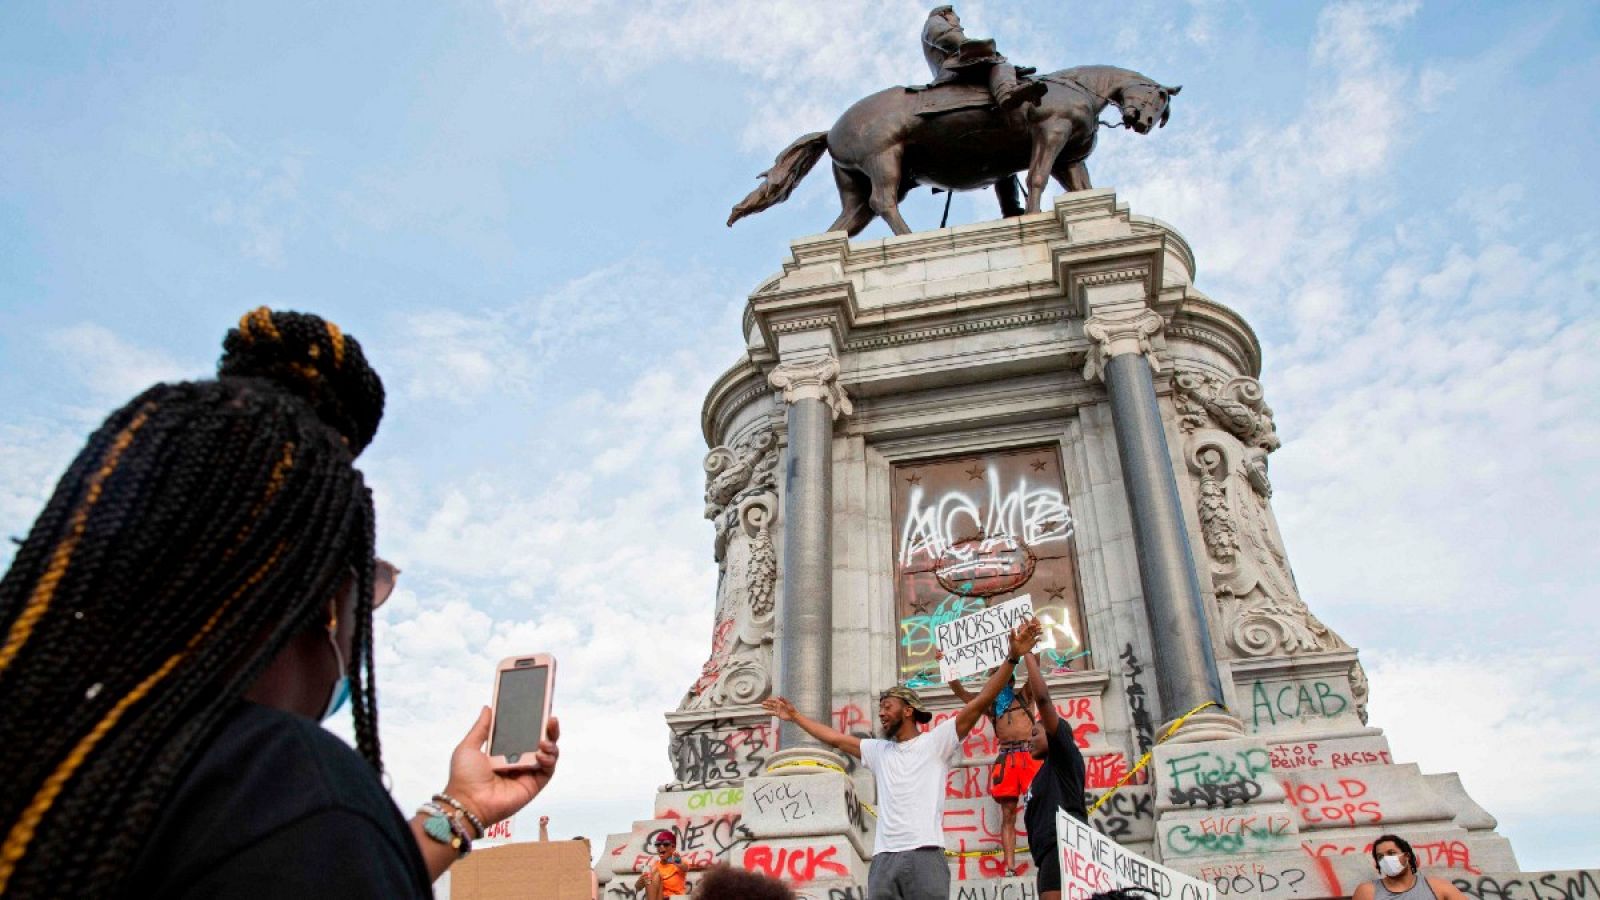 El estado de Virginia anuncia que retirará la estatua de un general confederado por ser un símbolo racista